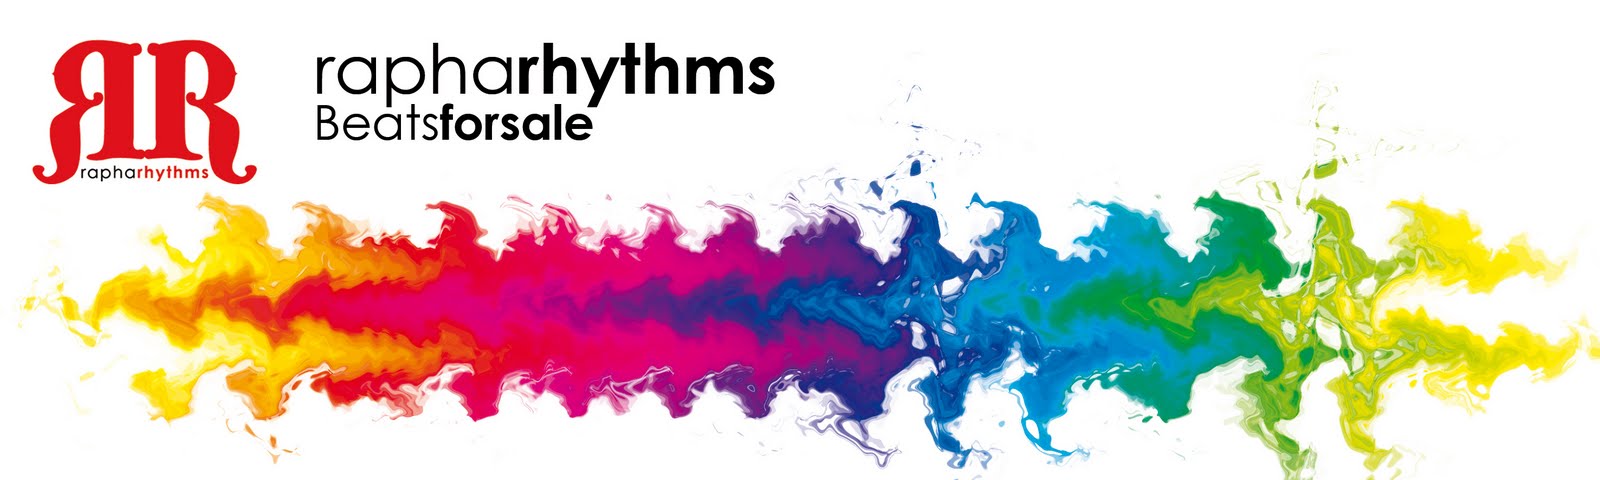 " RaphaRhythms - The beat store "